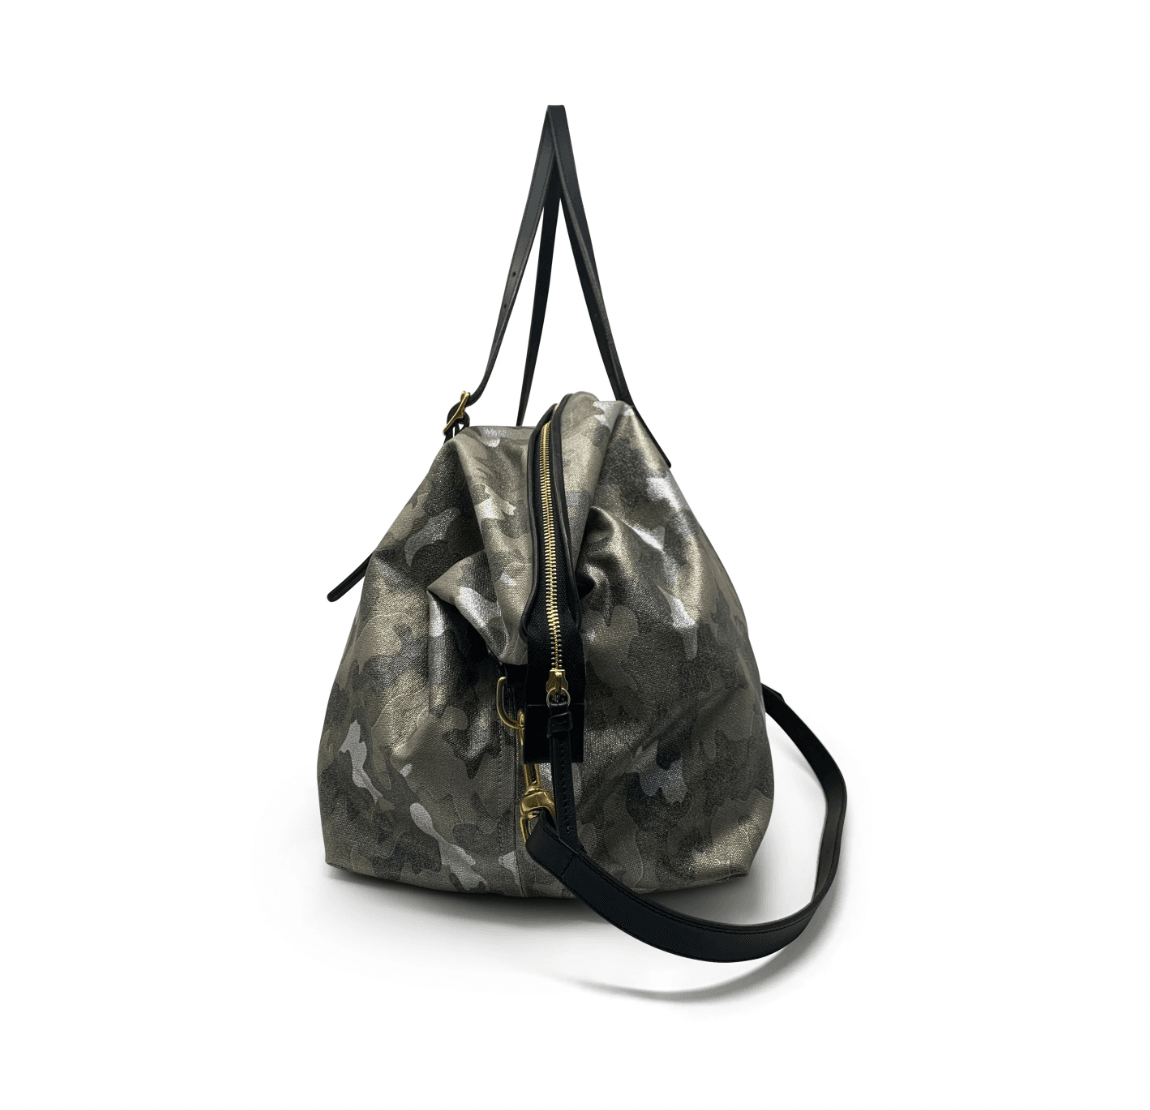 Metallic Camo Canvas Crossbody Bag by Kempton & Co.